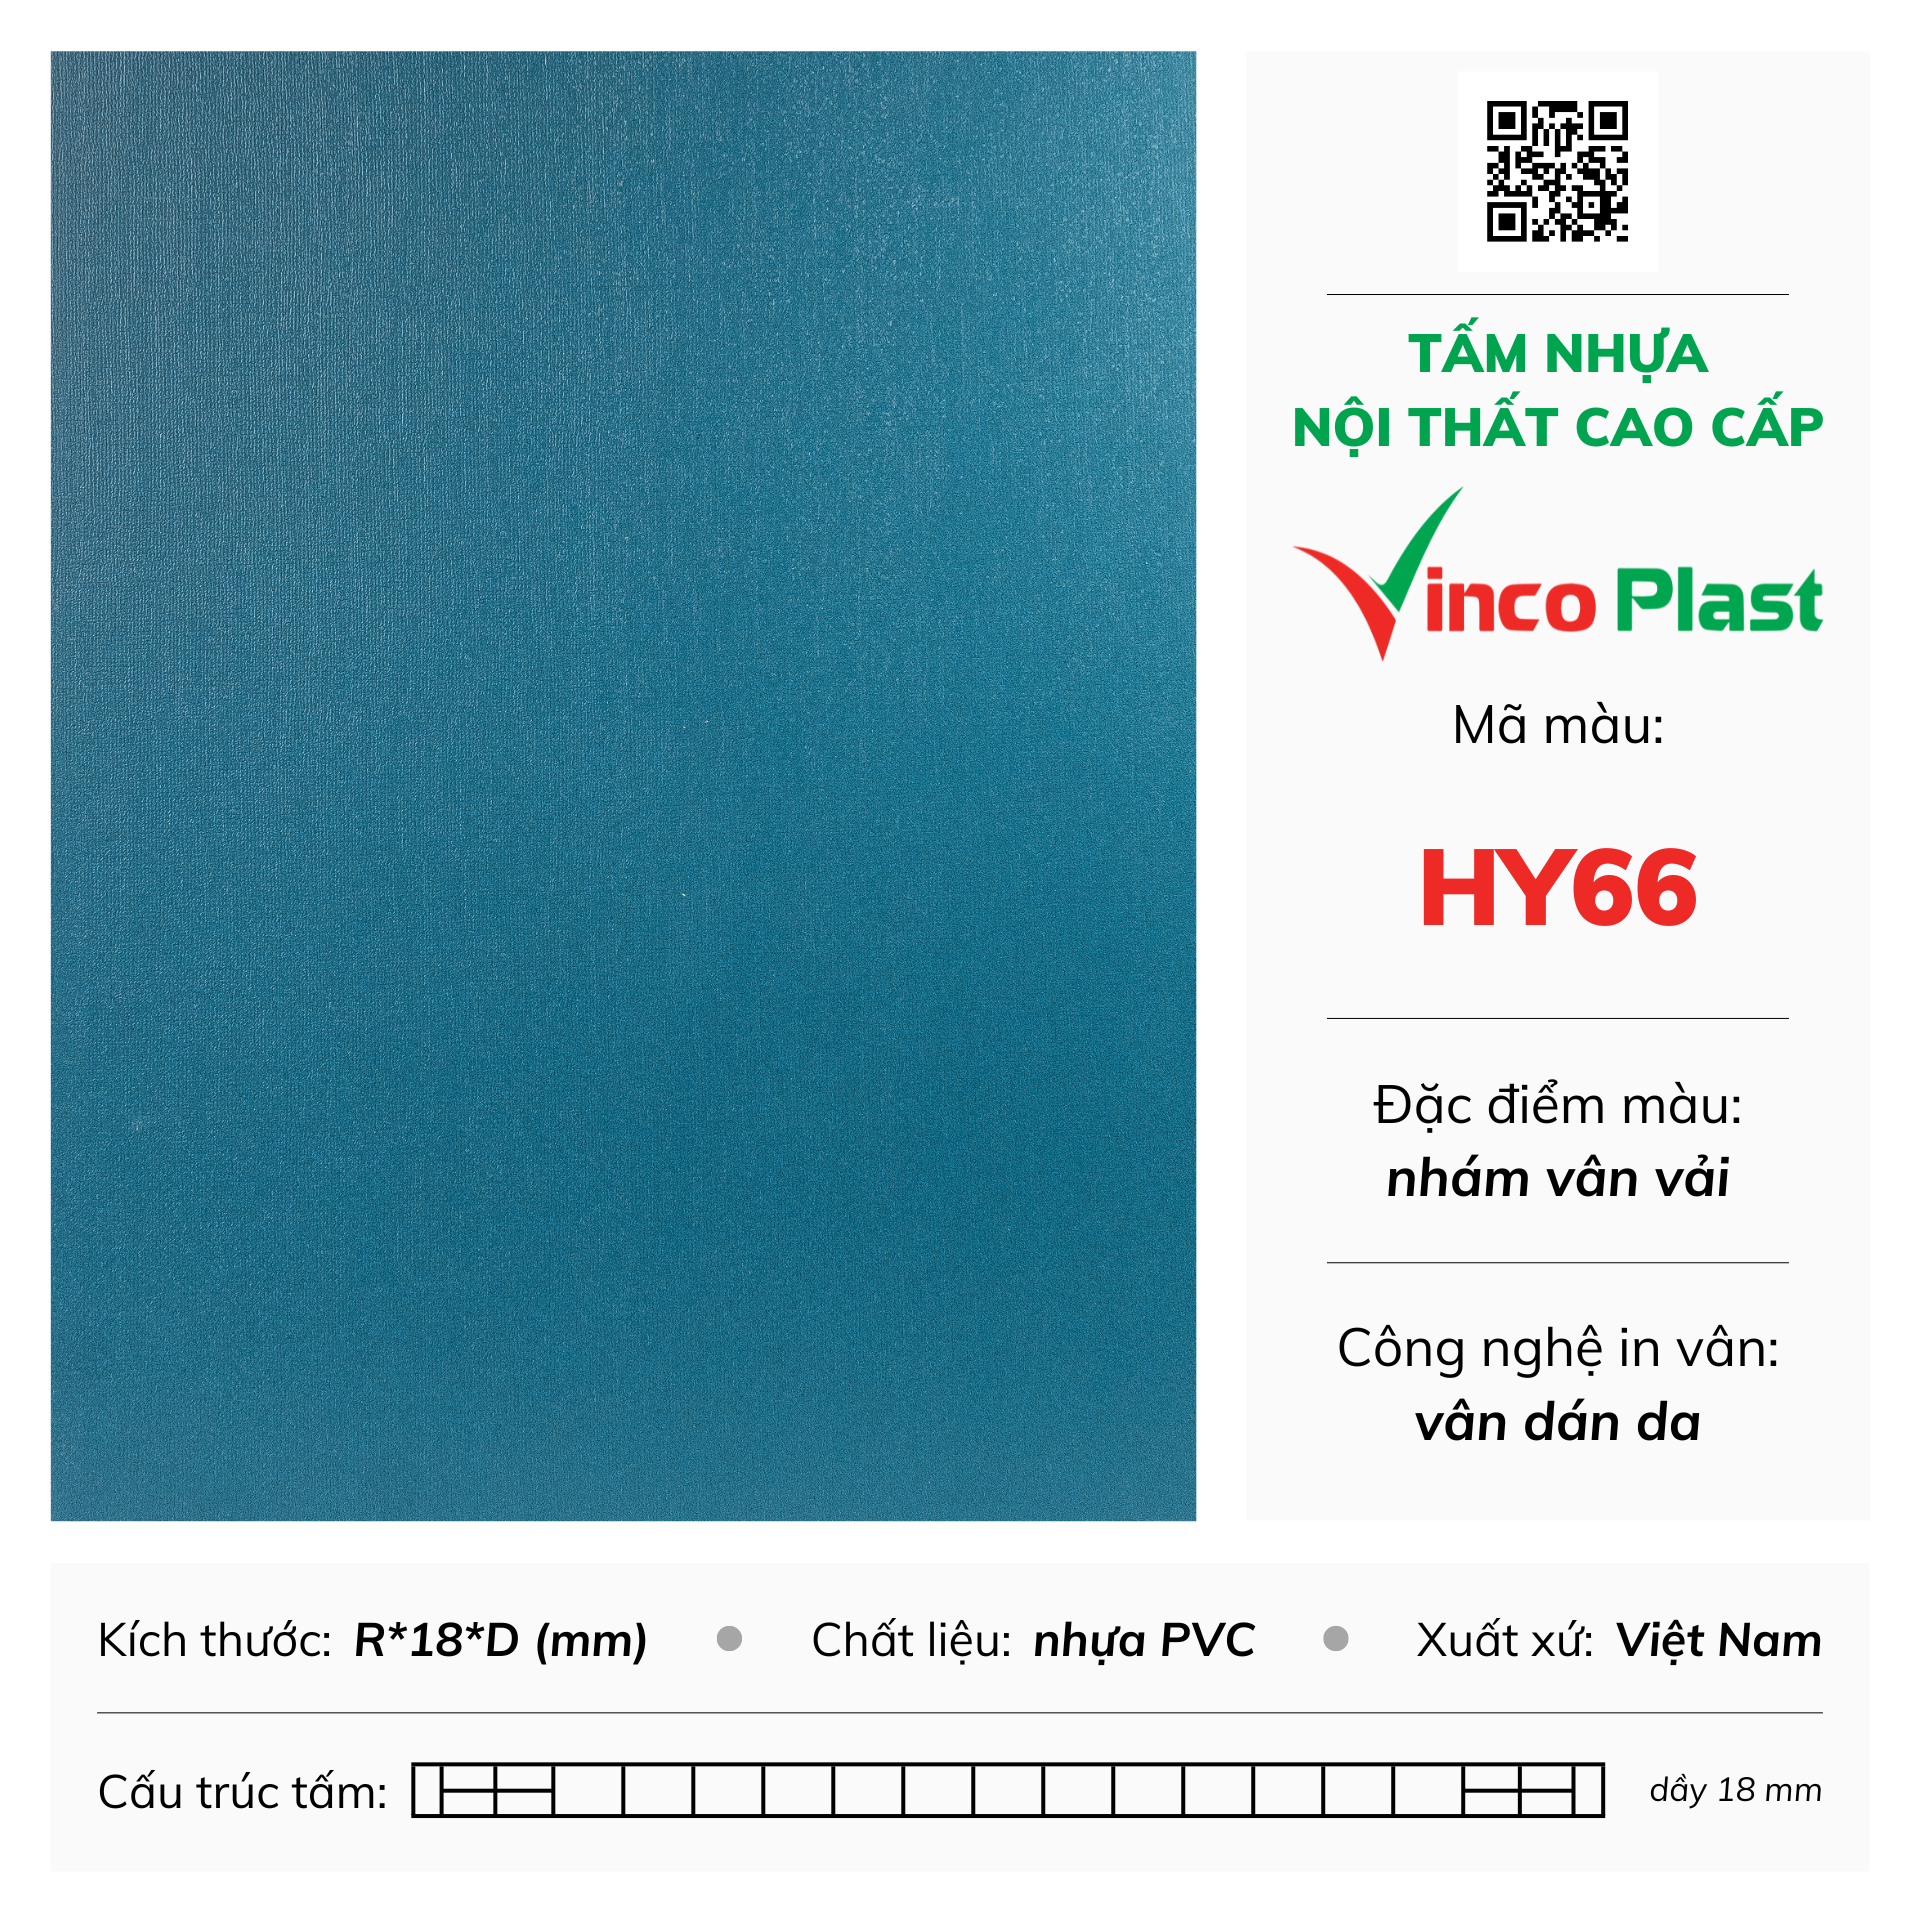 Tấm nhựa nội thất cao cấp Vincoplast màu hy66